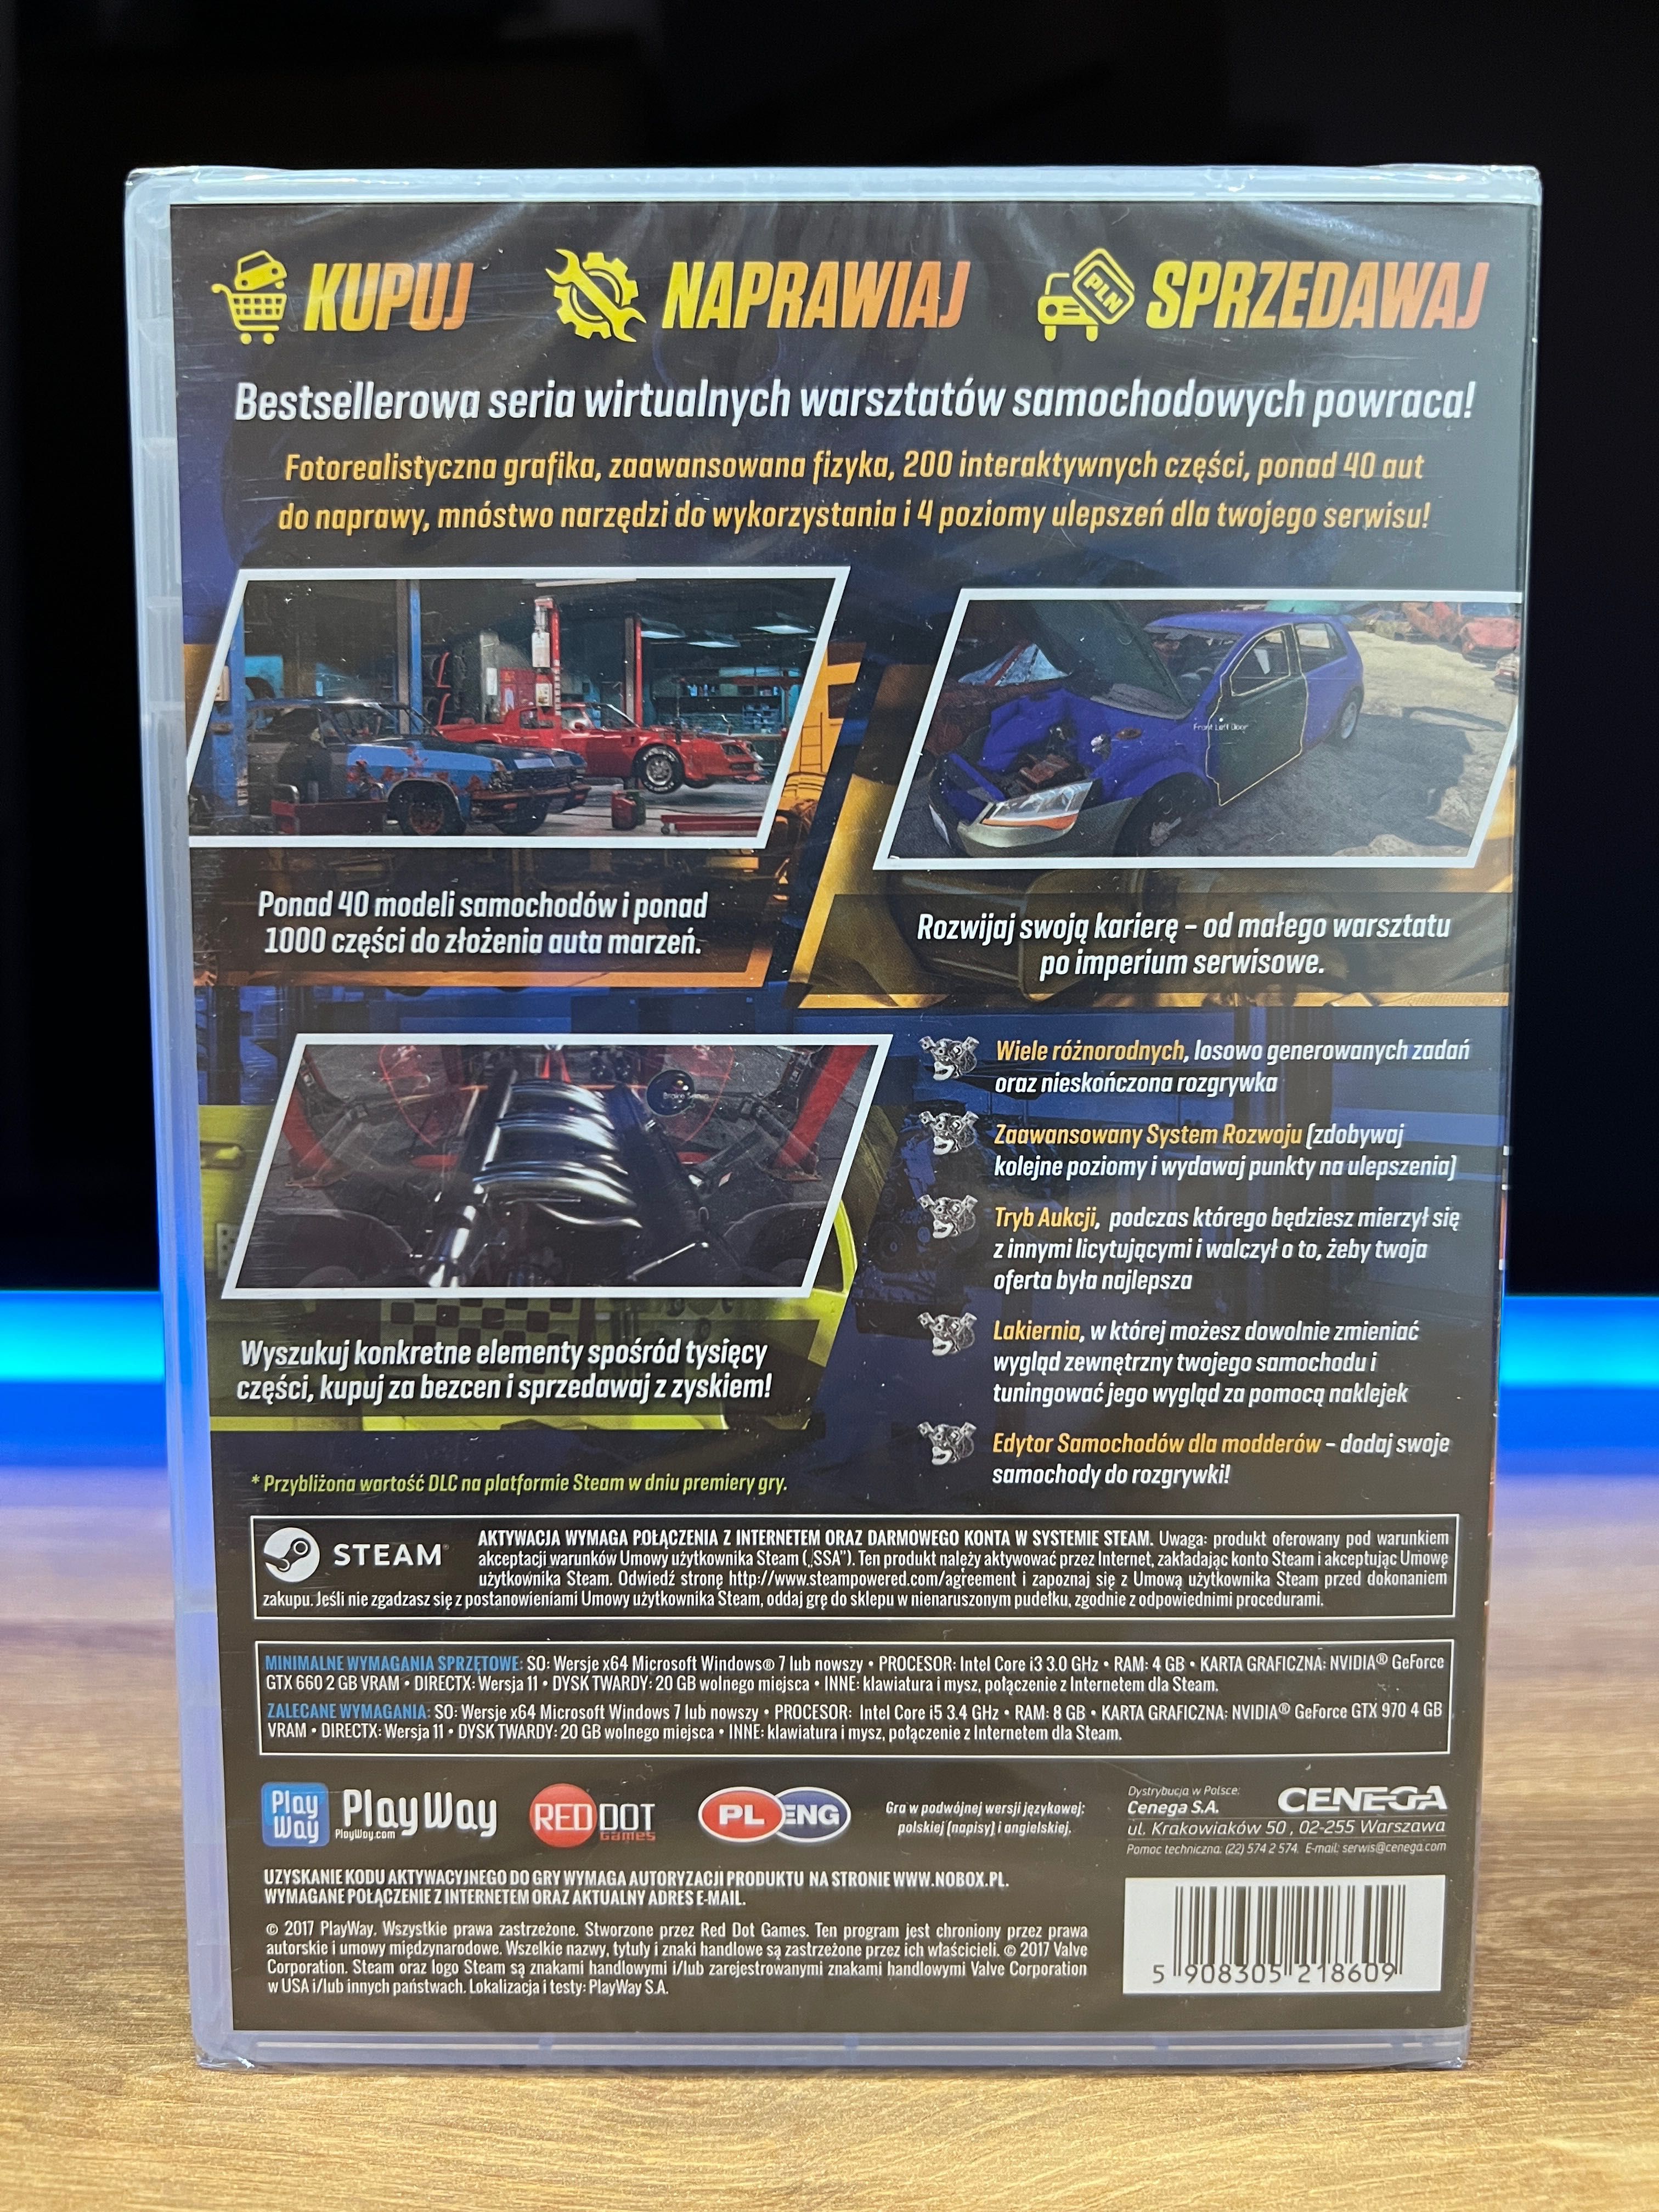 Car Mechanic Simulator 2018 (PC PL 2017) NOWA FOLIA premierowe wydanie